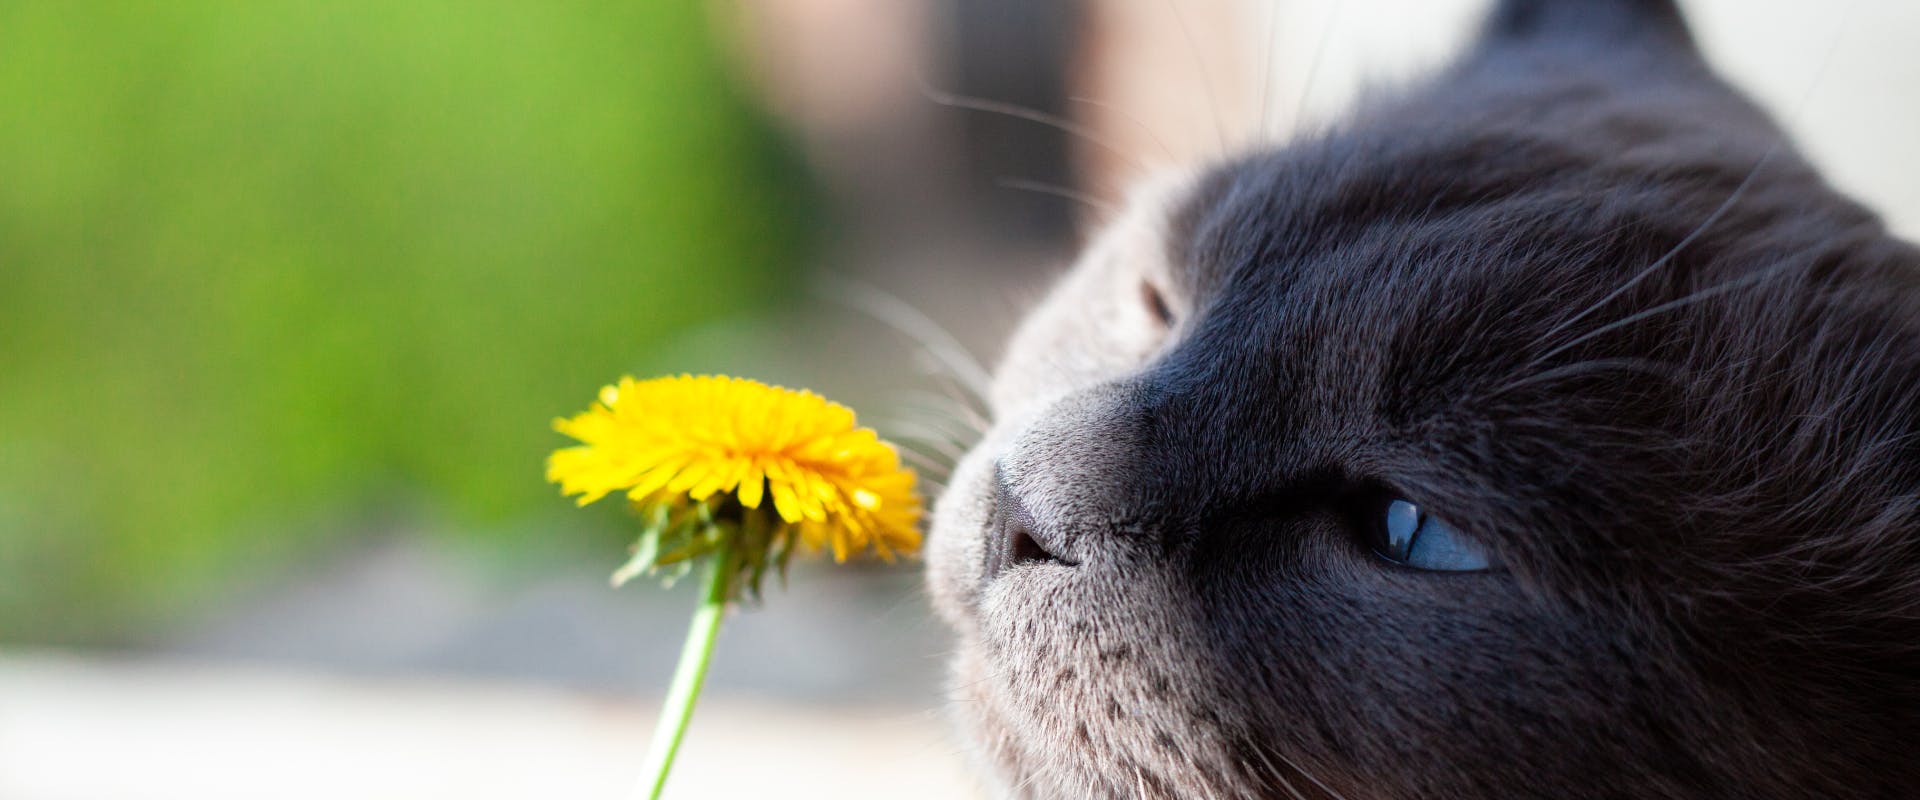 A cat sniffs a dandelion.